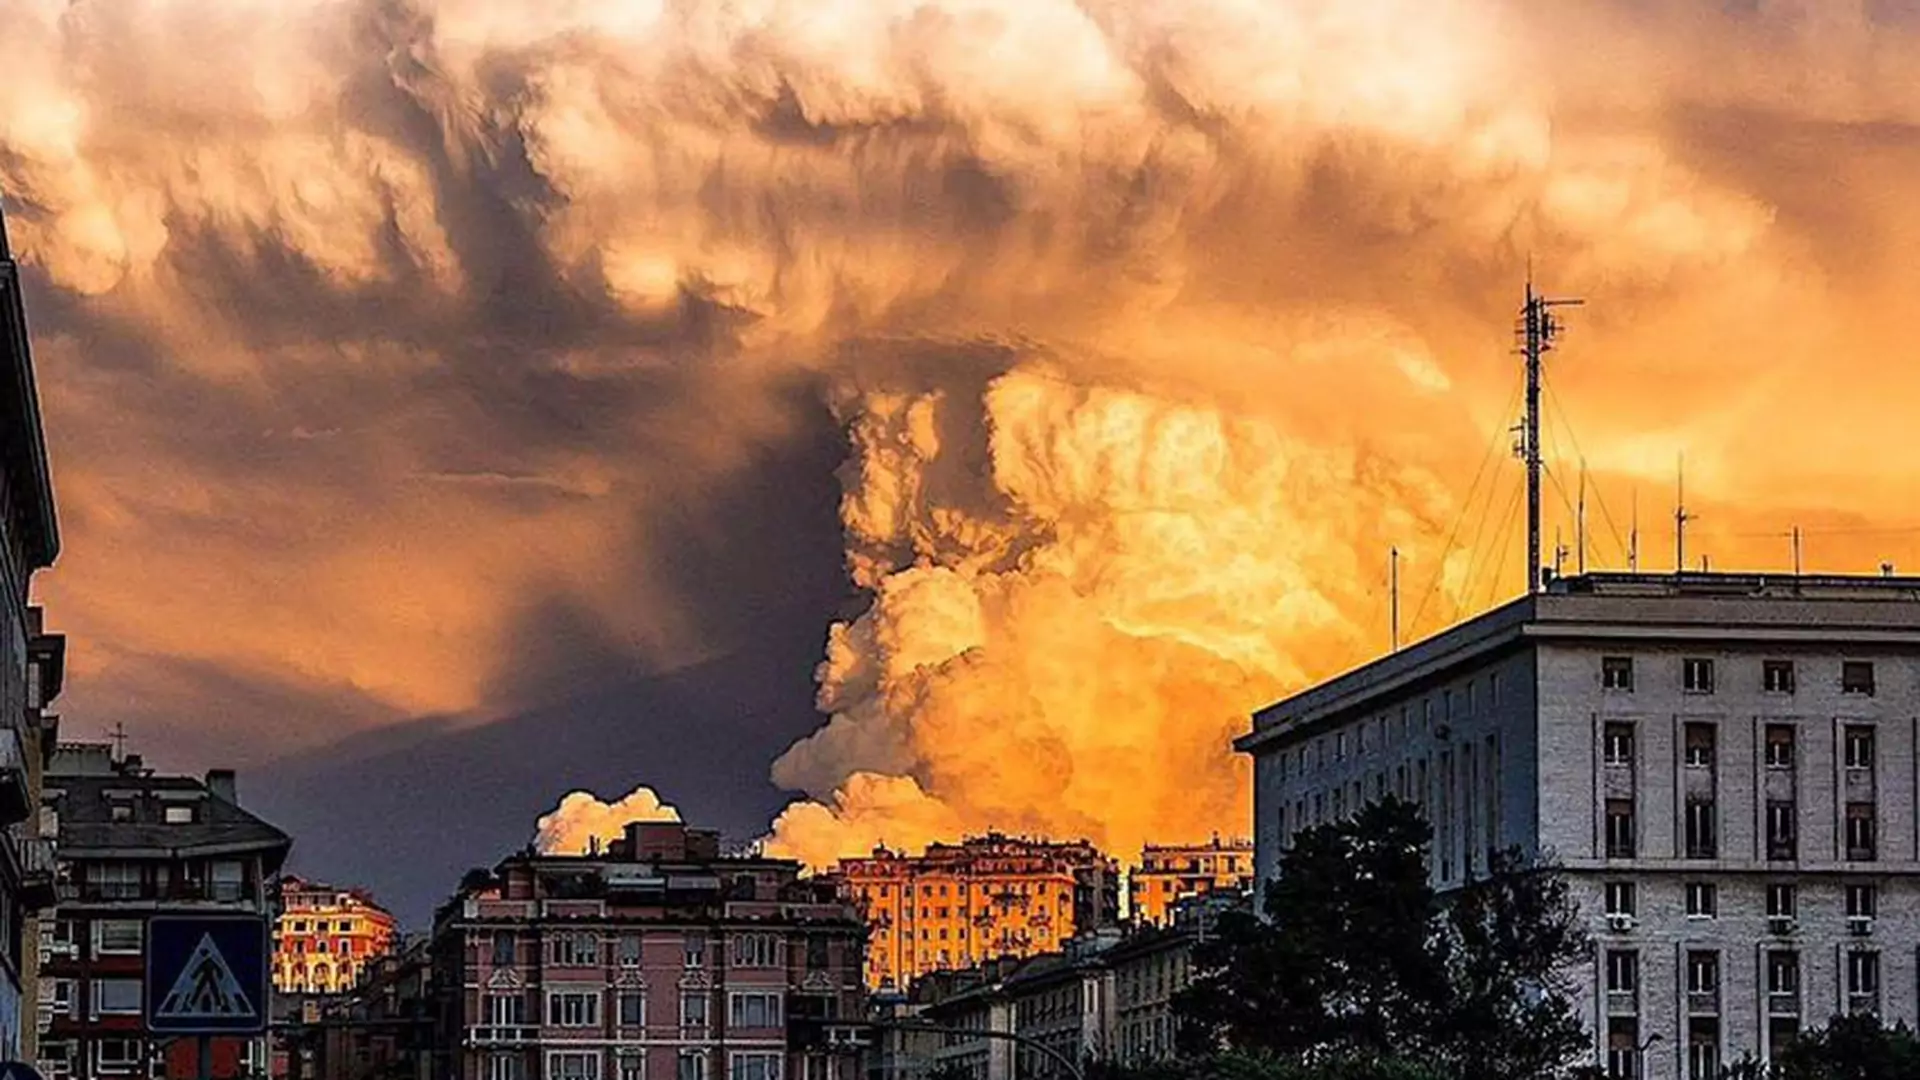 Fascynująca chmura na niebie podczas zachodu we Włoszech. Aż ciężko uwierzyć w te zdjęcia